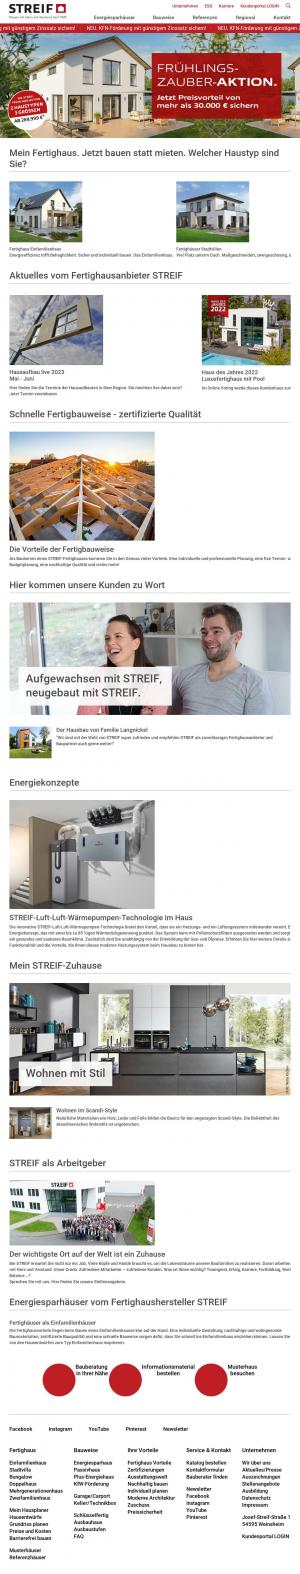 www.streif.de